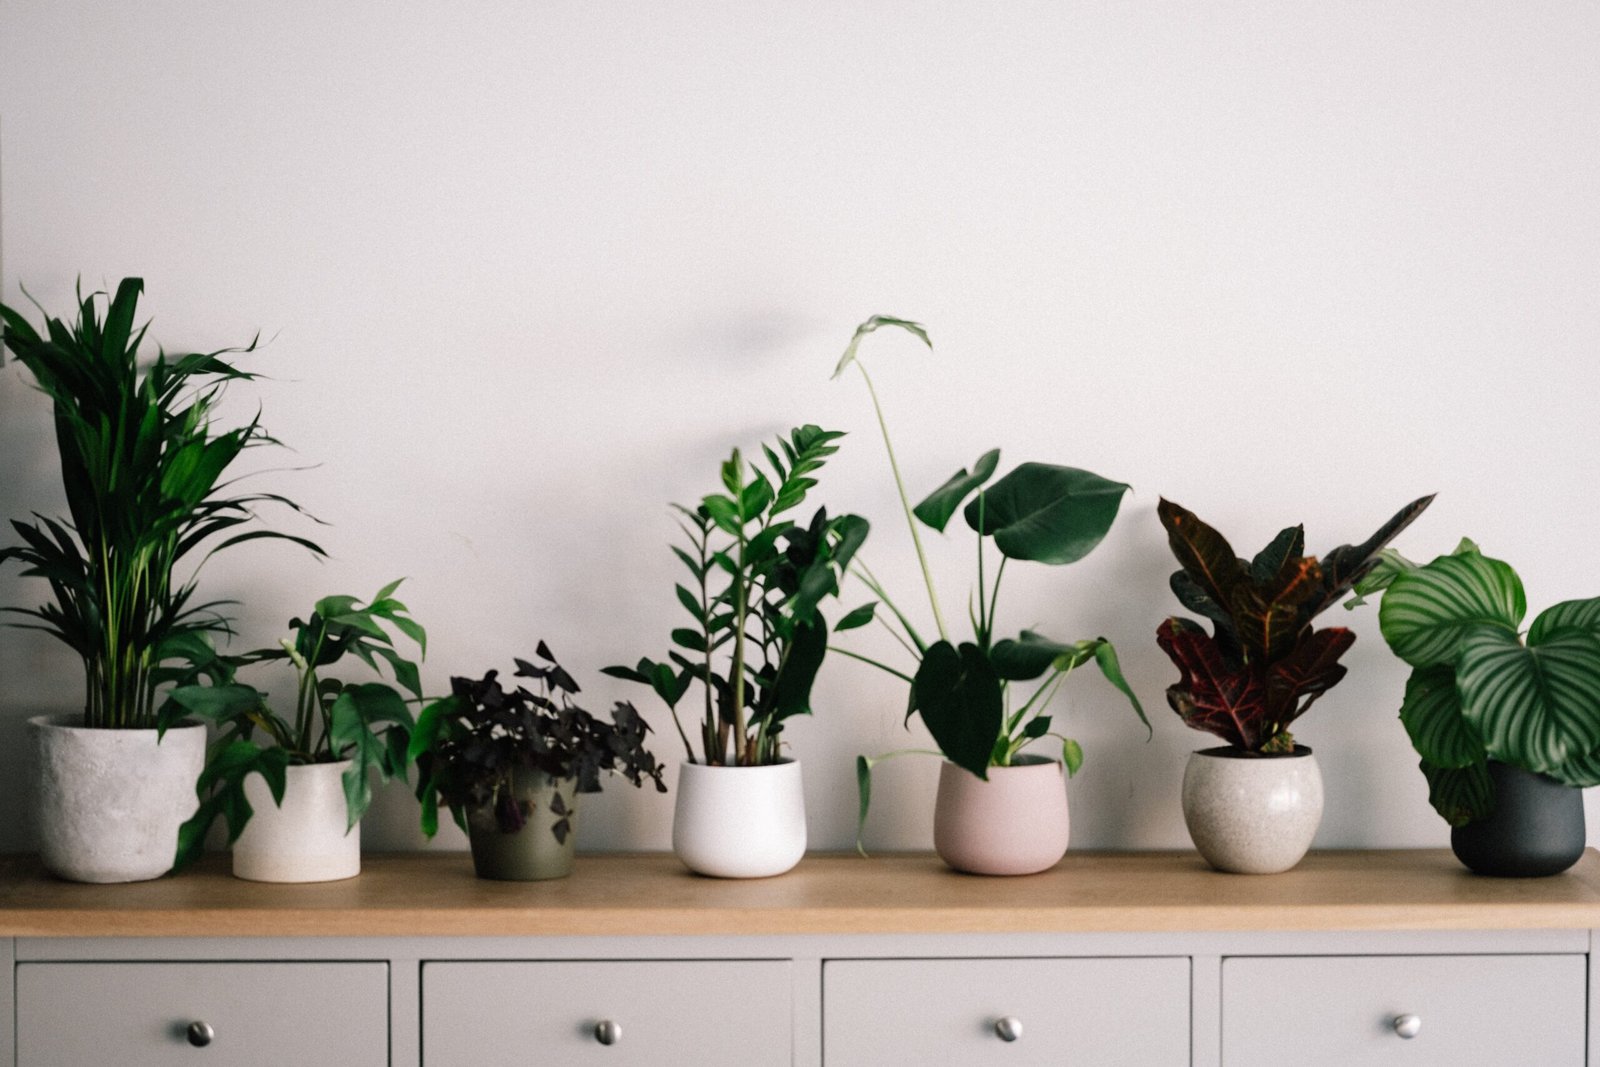 Best 6 Plants for Perfect Indoor Garden